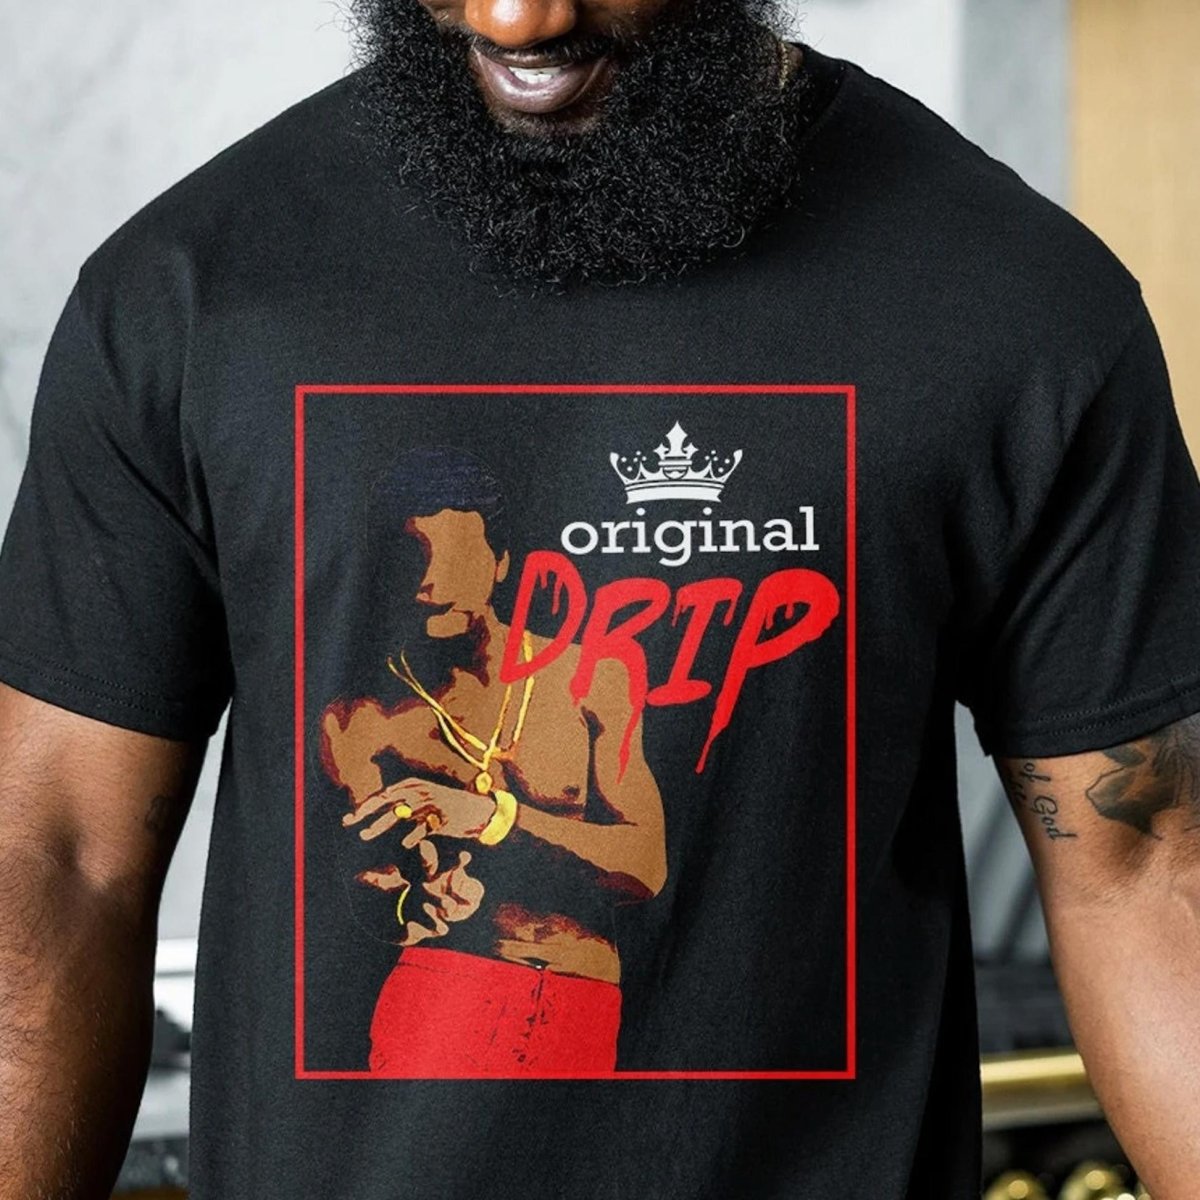 OG Drip Shirt - The Trini Gee